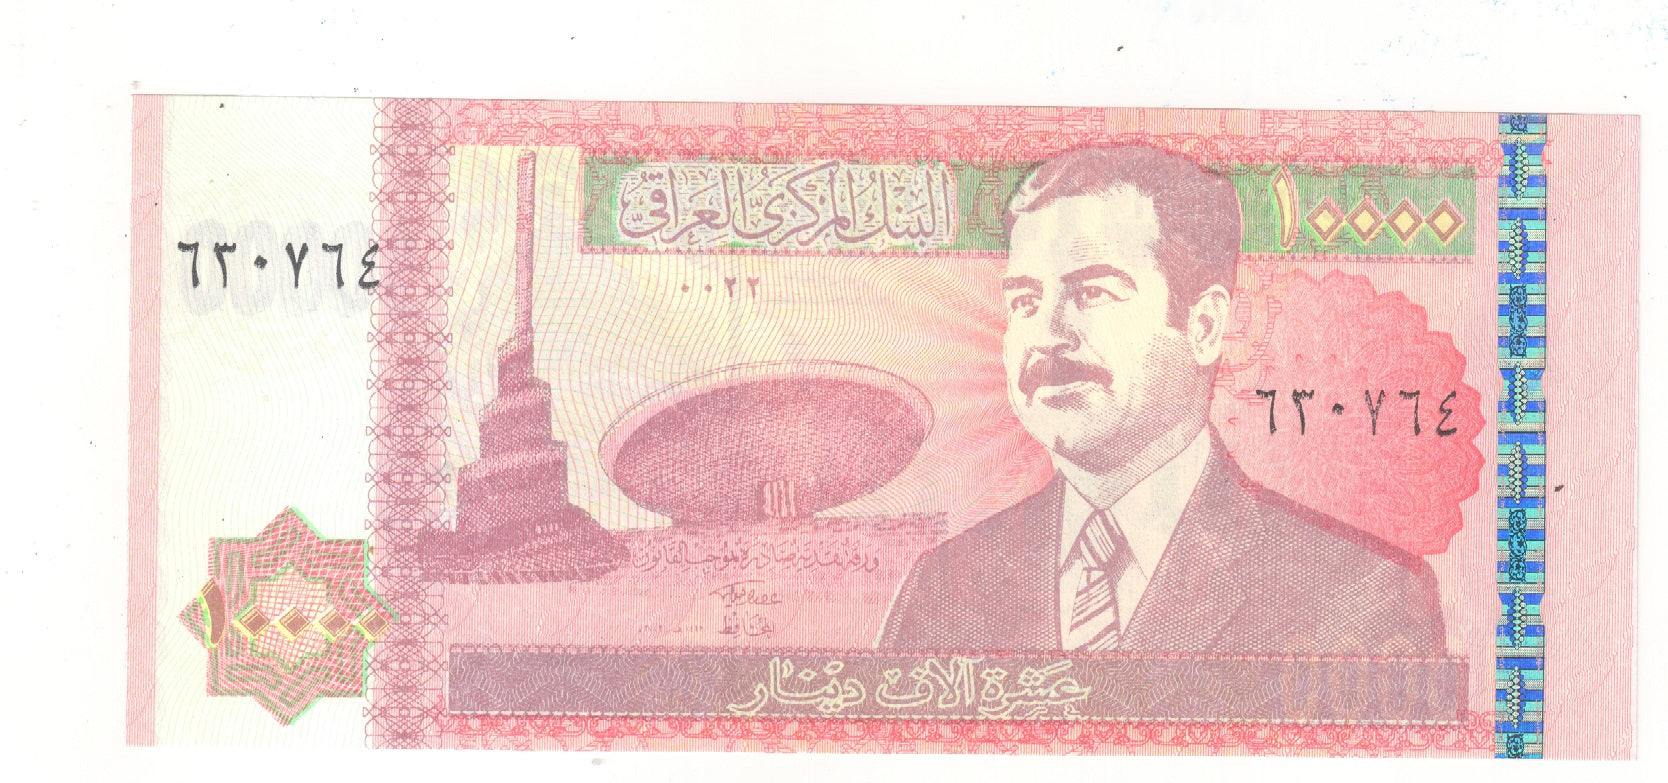 Iraq 10,000 Dinars – tezbid